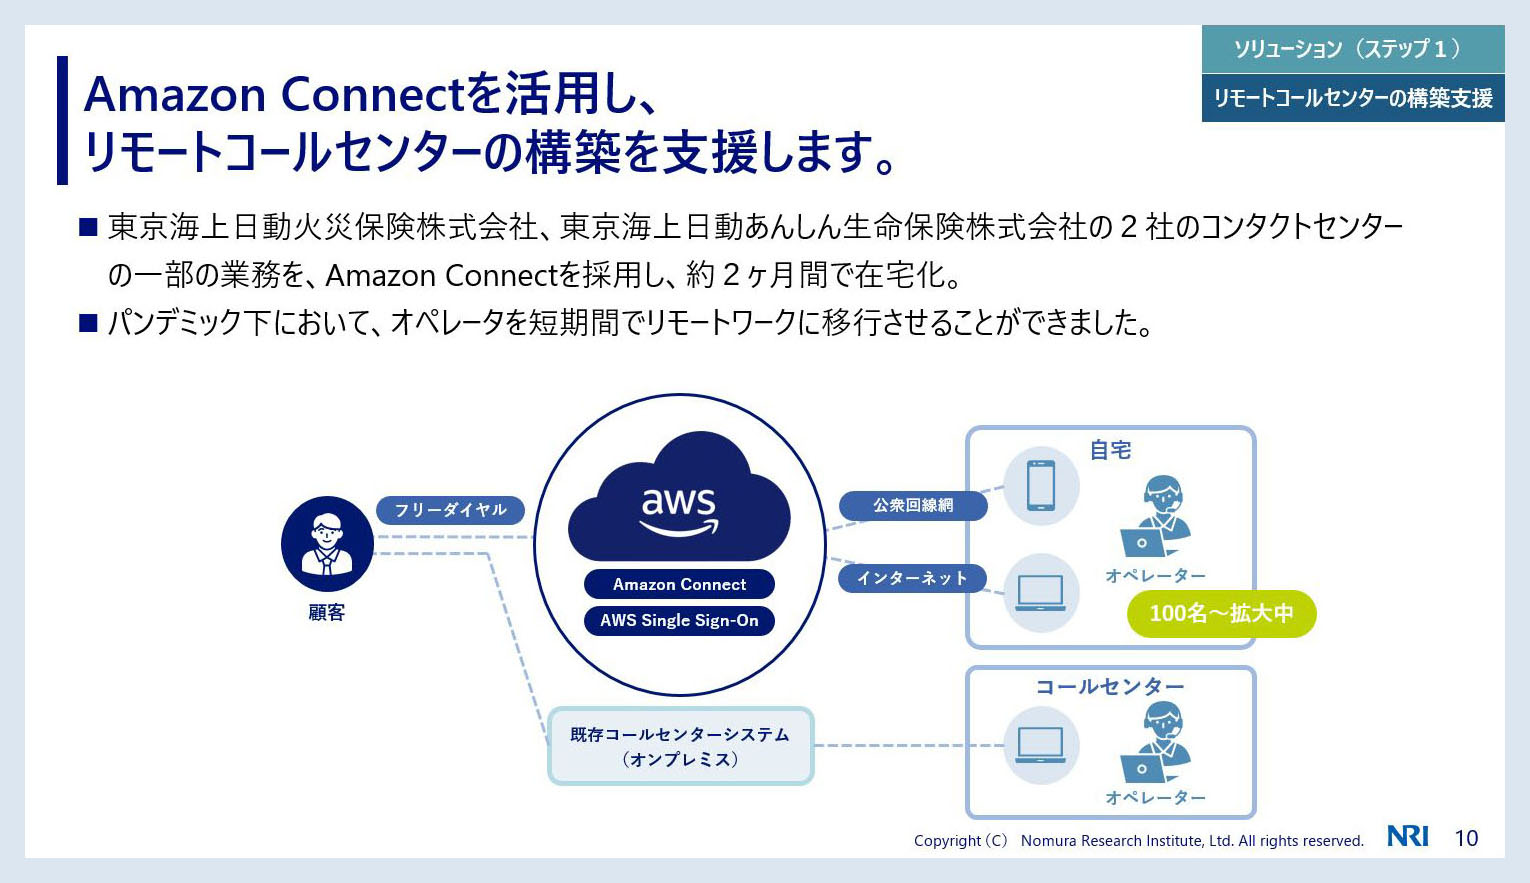 Amazon Connect を活用したクラウド型コールセンターを構築し、柔軟なリモートワークを実現